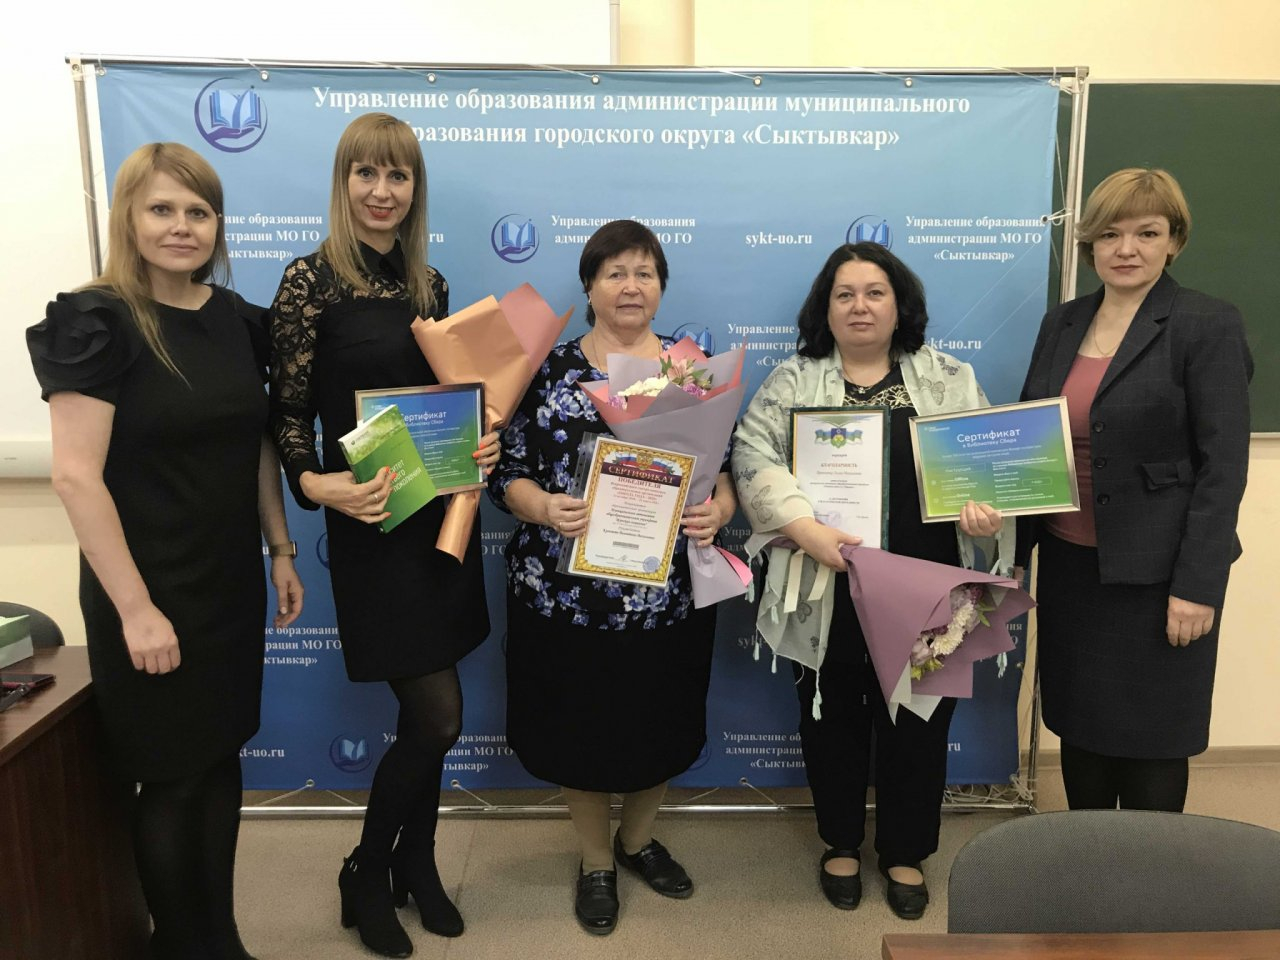 СберУниверситет предоставил лучшим учителям Республики Коми доступ к библиотеке Сбера